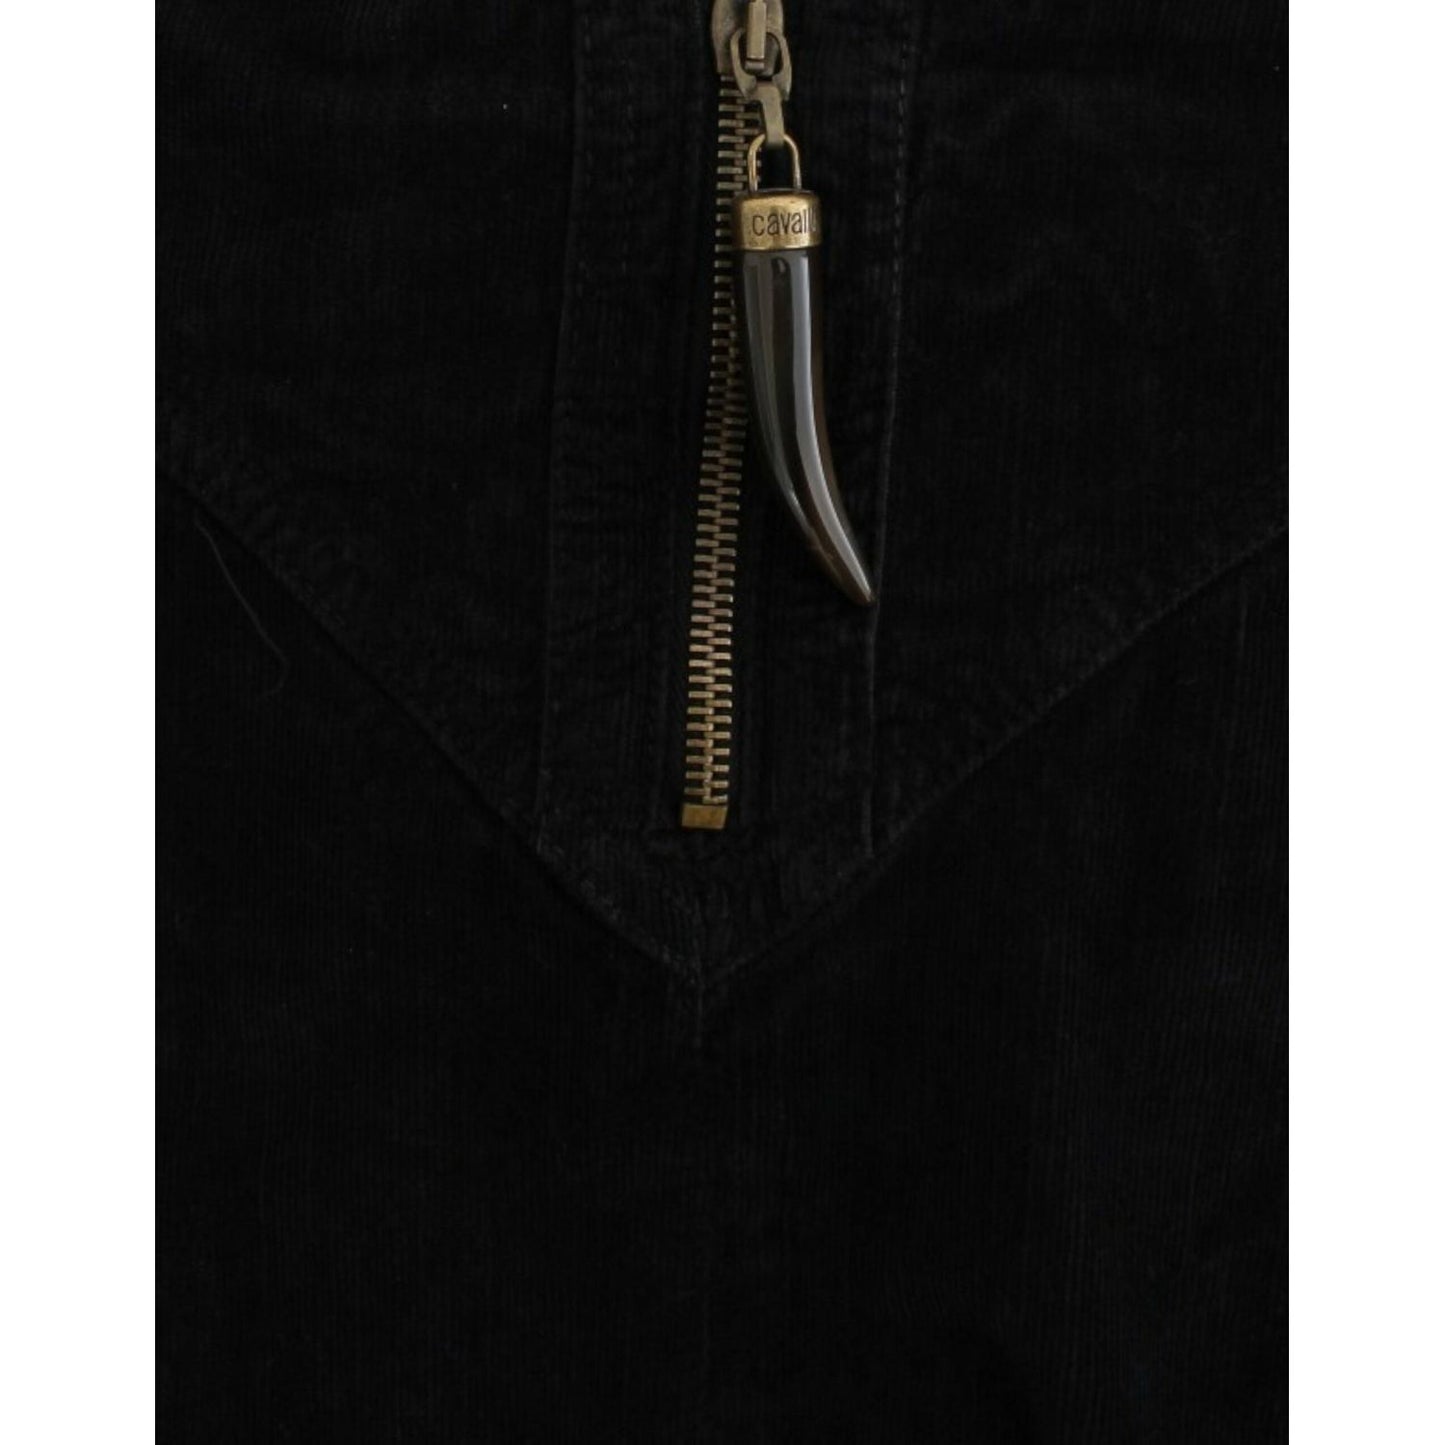 Cavalli Elegant Black Pencil Skirt for Sophisticated Style black-corduroy-pencil-skirt 9195-black-corduroy-pencil-skirt-4-scaled-1d2938c2-4b8.jpg